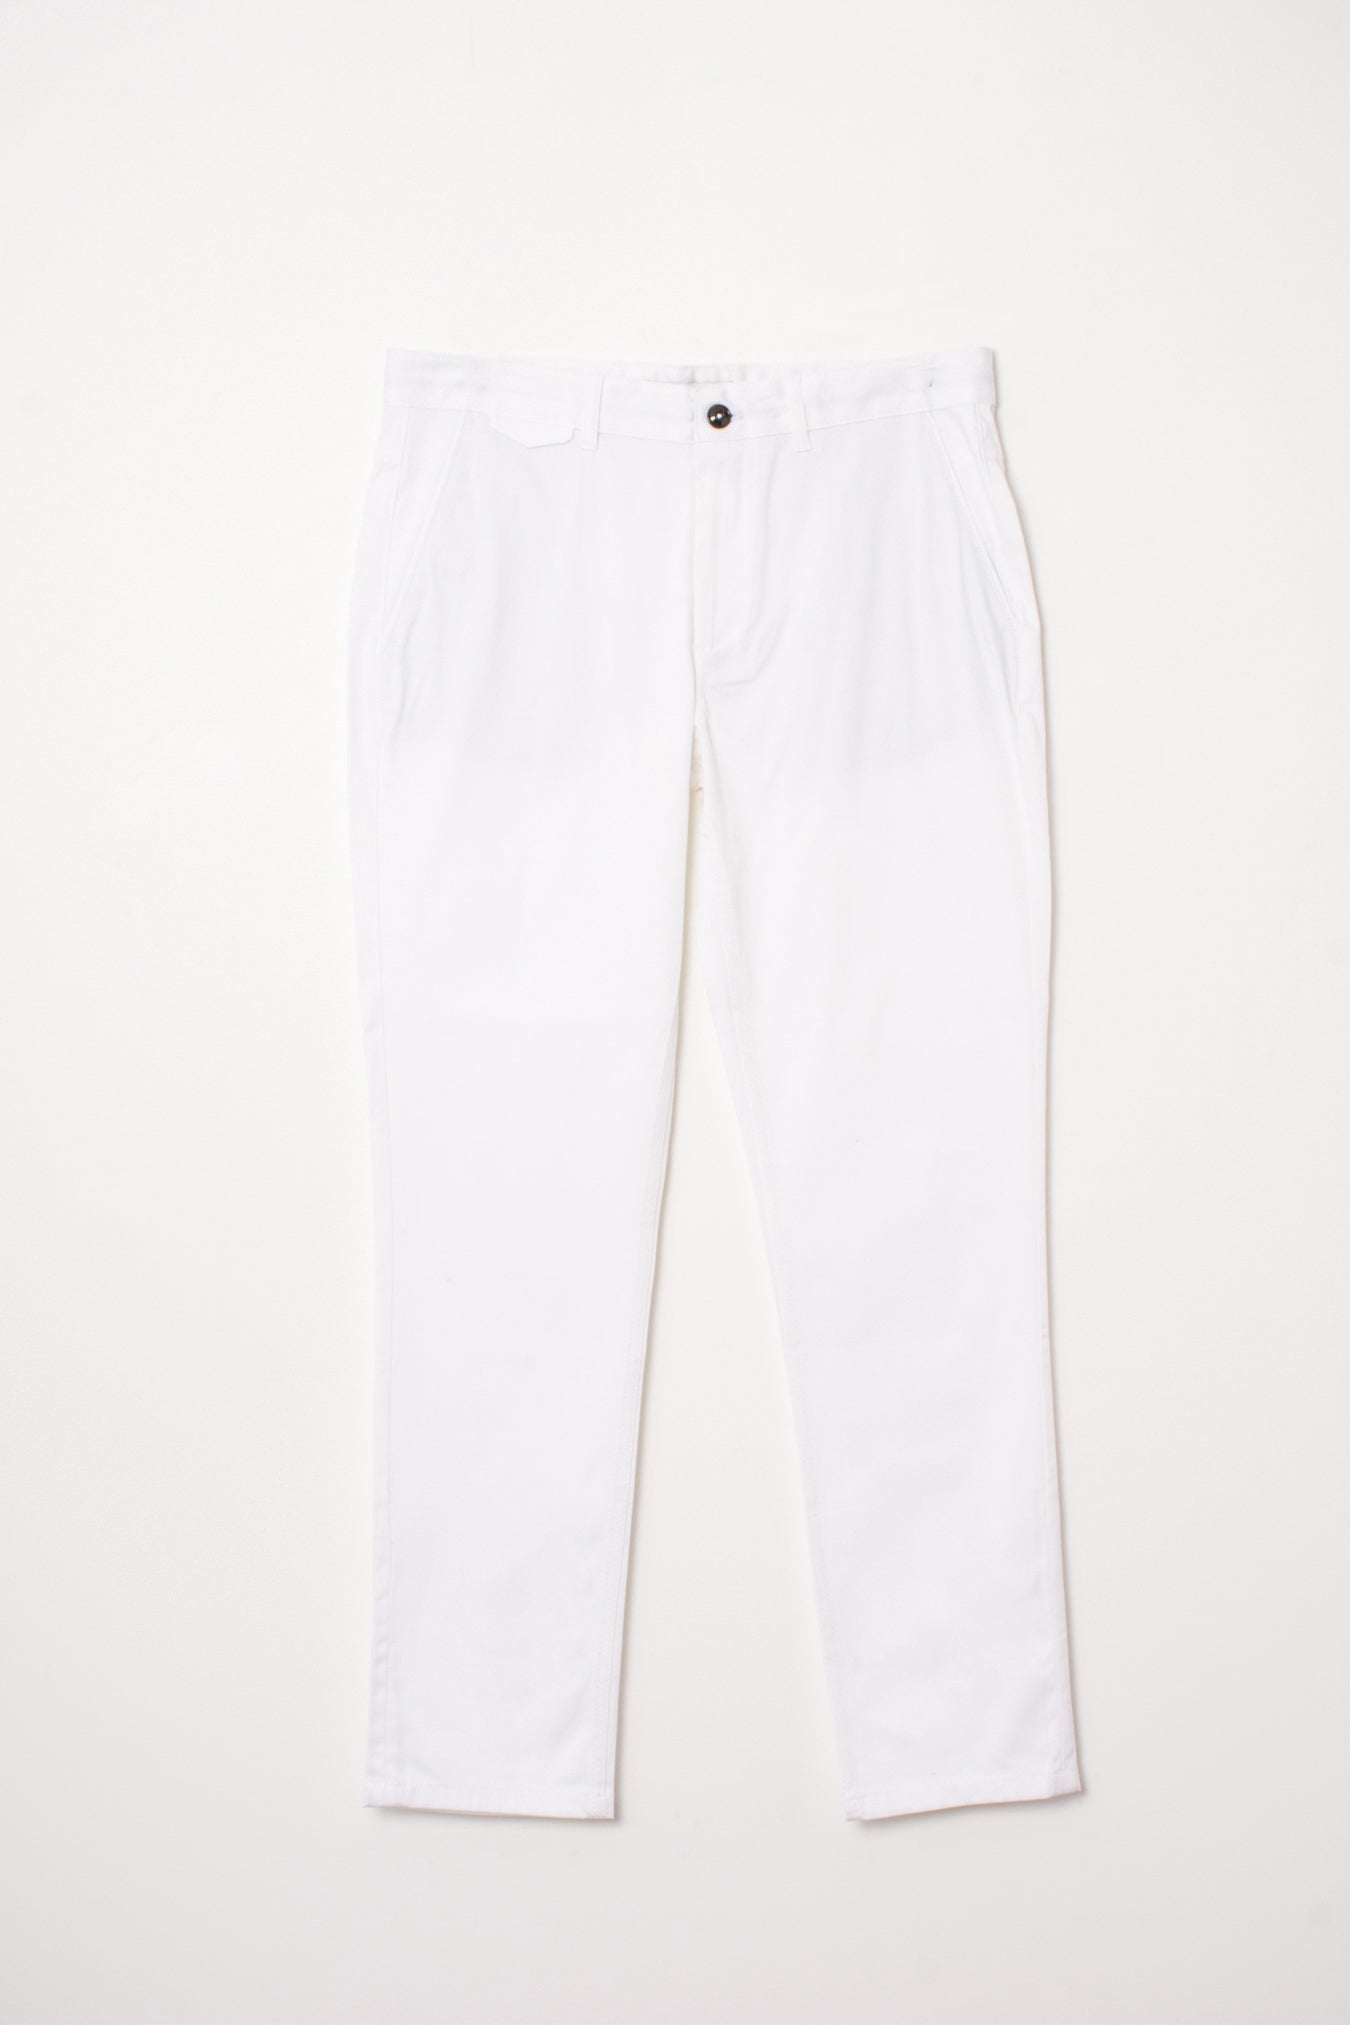 Blanco Hombre Zara – Tienda